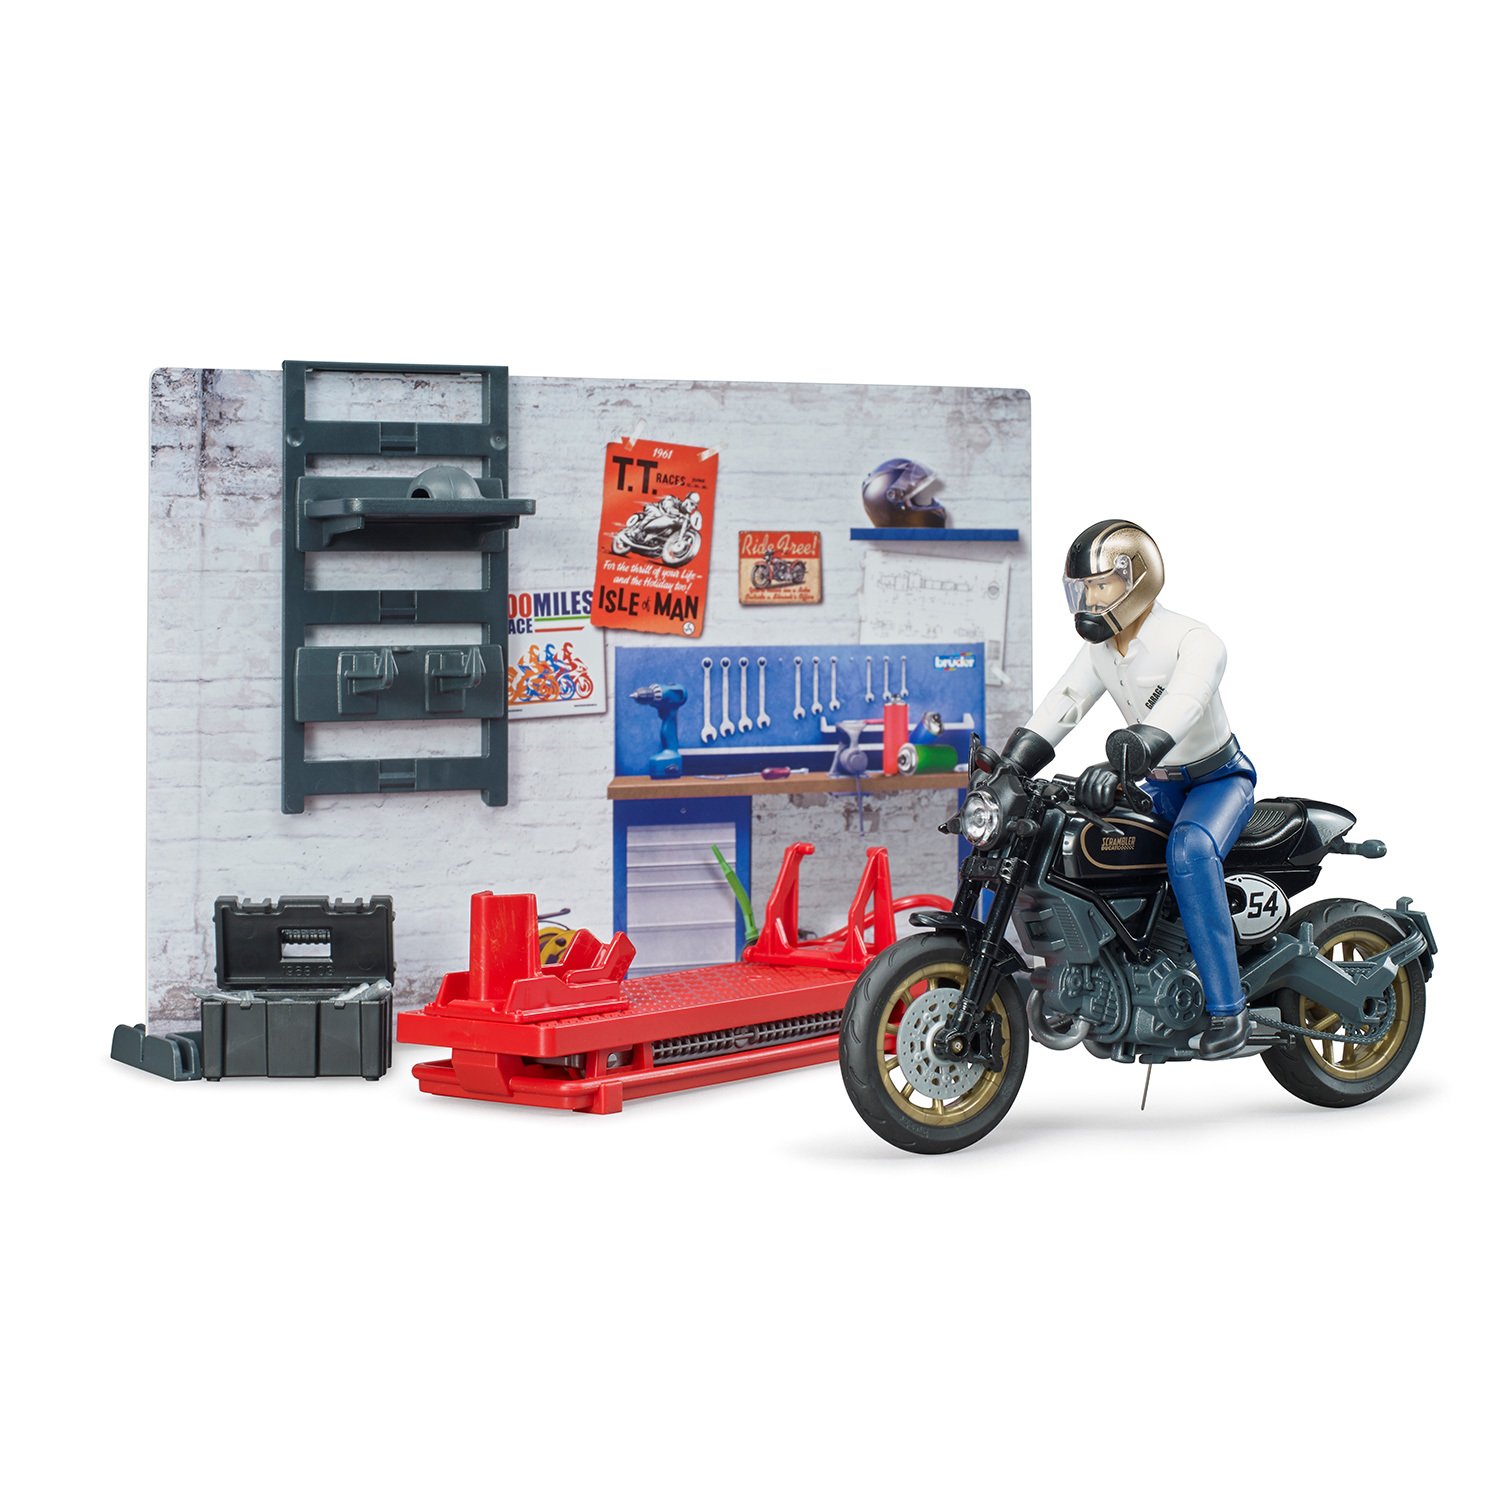 Ремонтный набор для мотоцикла с механиком и декорациями  